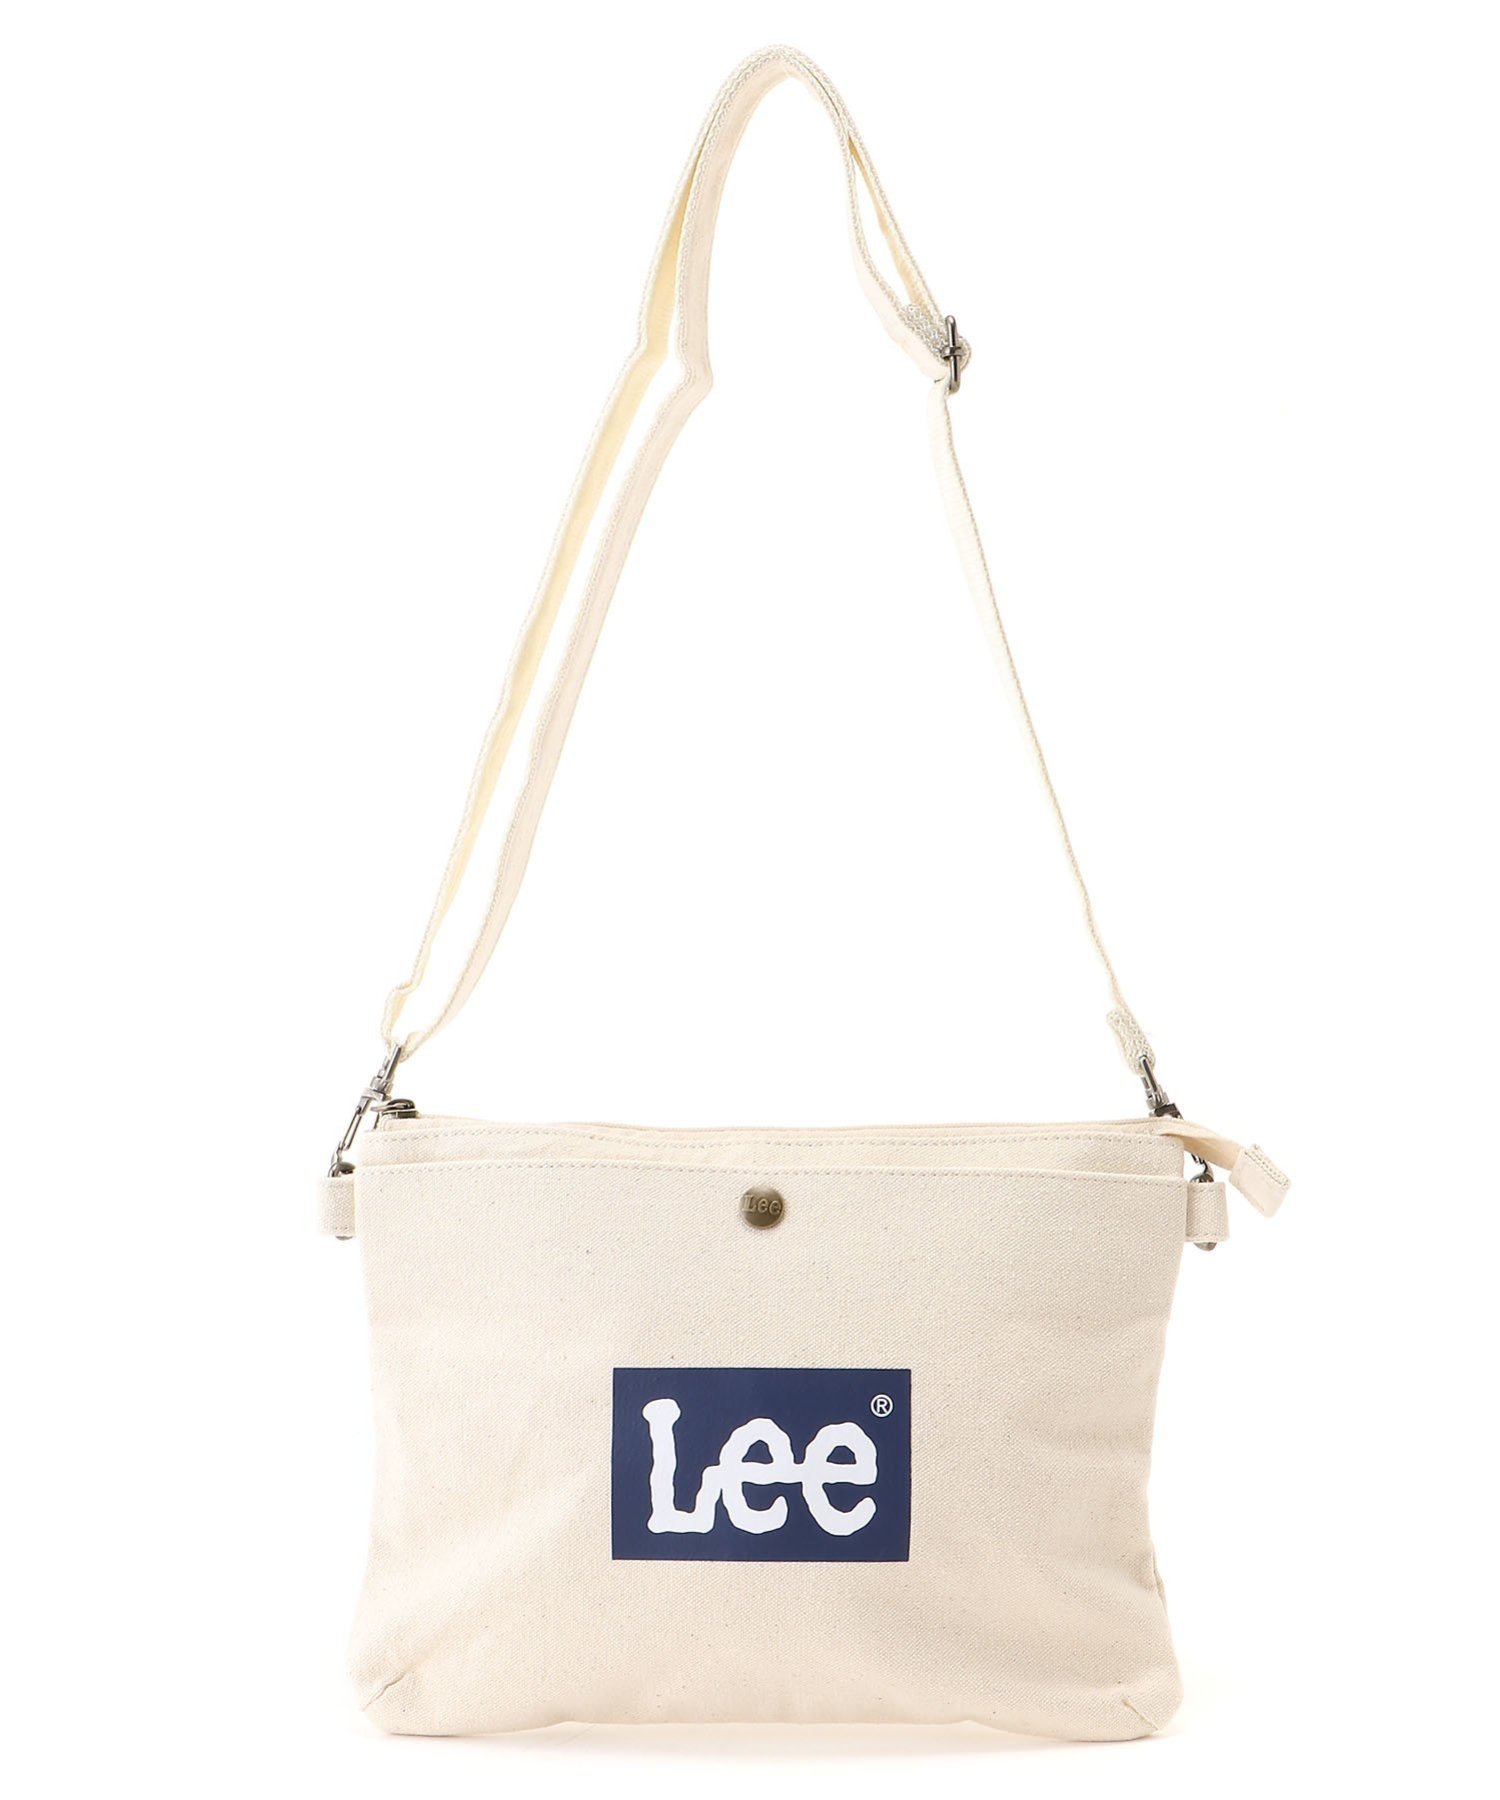 リー サコッシュ レディース 【SALE／10%OFF】Lee Lee サコッシュ ショルダーバッグ メンズ レディース キャンバス ラザル バッグ ショルダーバッグ ホワイト